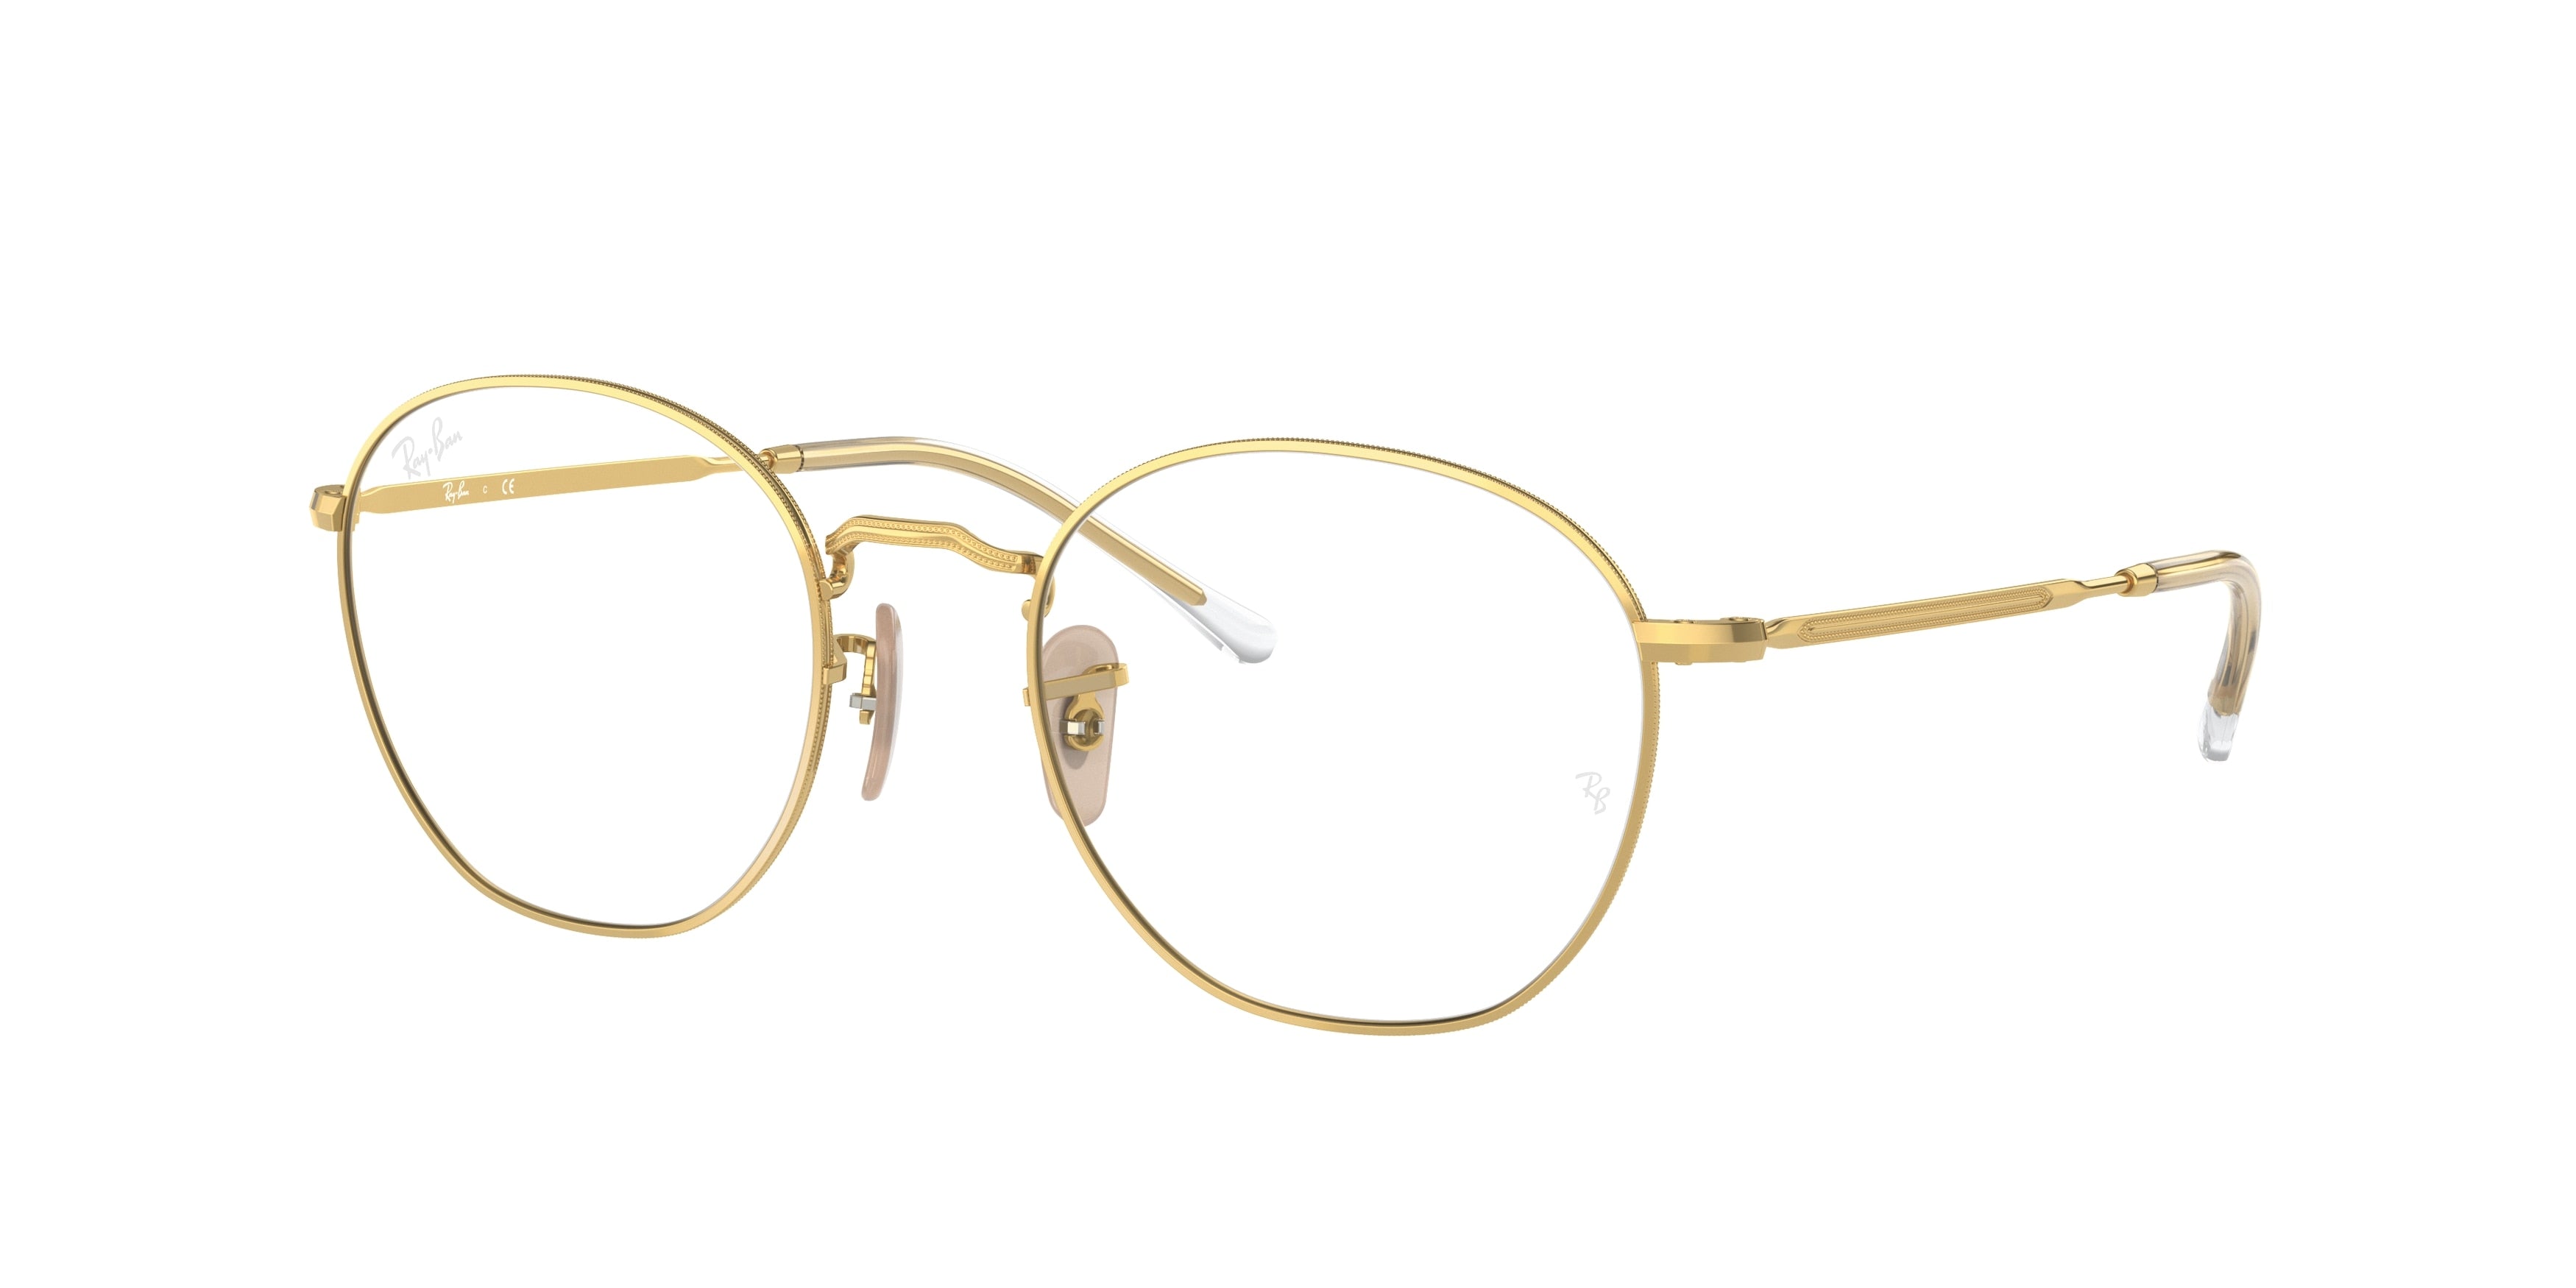 Ray-Ban Optical ROB RX6472 Irregular Eyeglasses  2500-Gold 52-140-20 - Color Map Gold